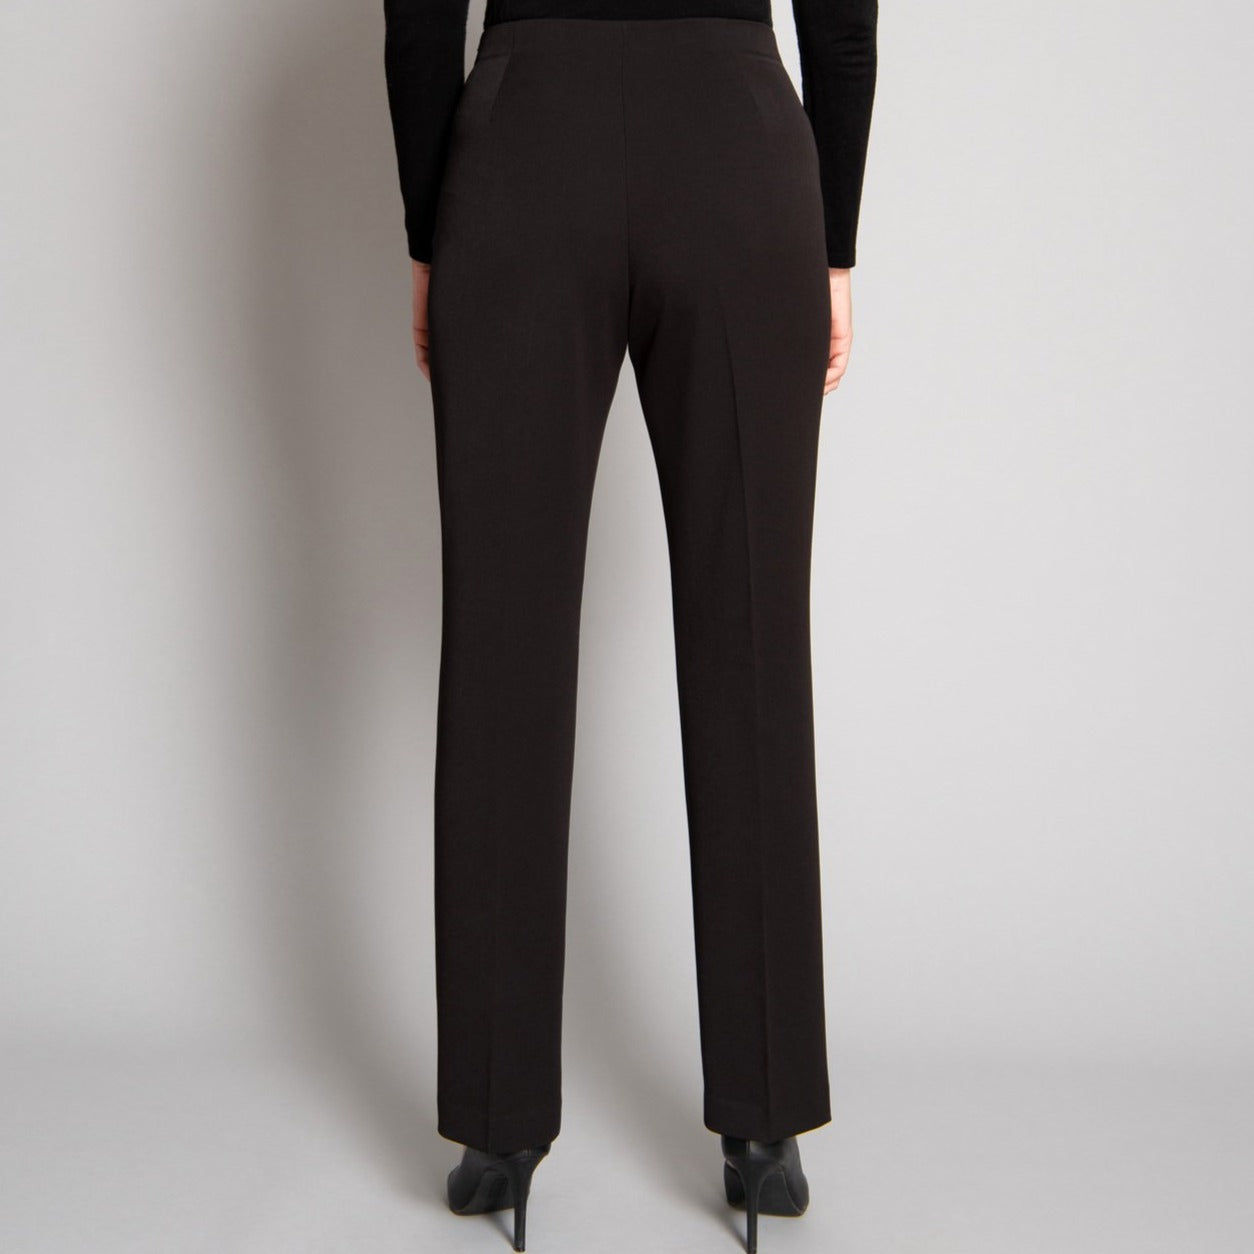 Men's Gothic High-waisted Zipper Suit Pants – Punk Design